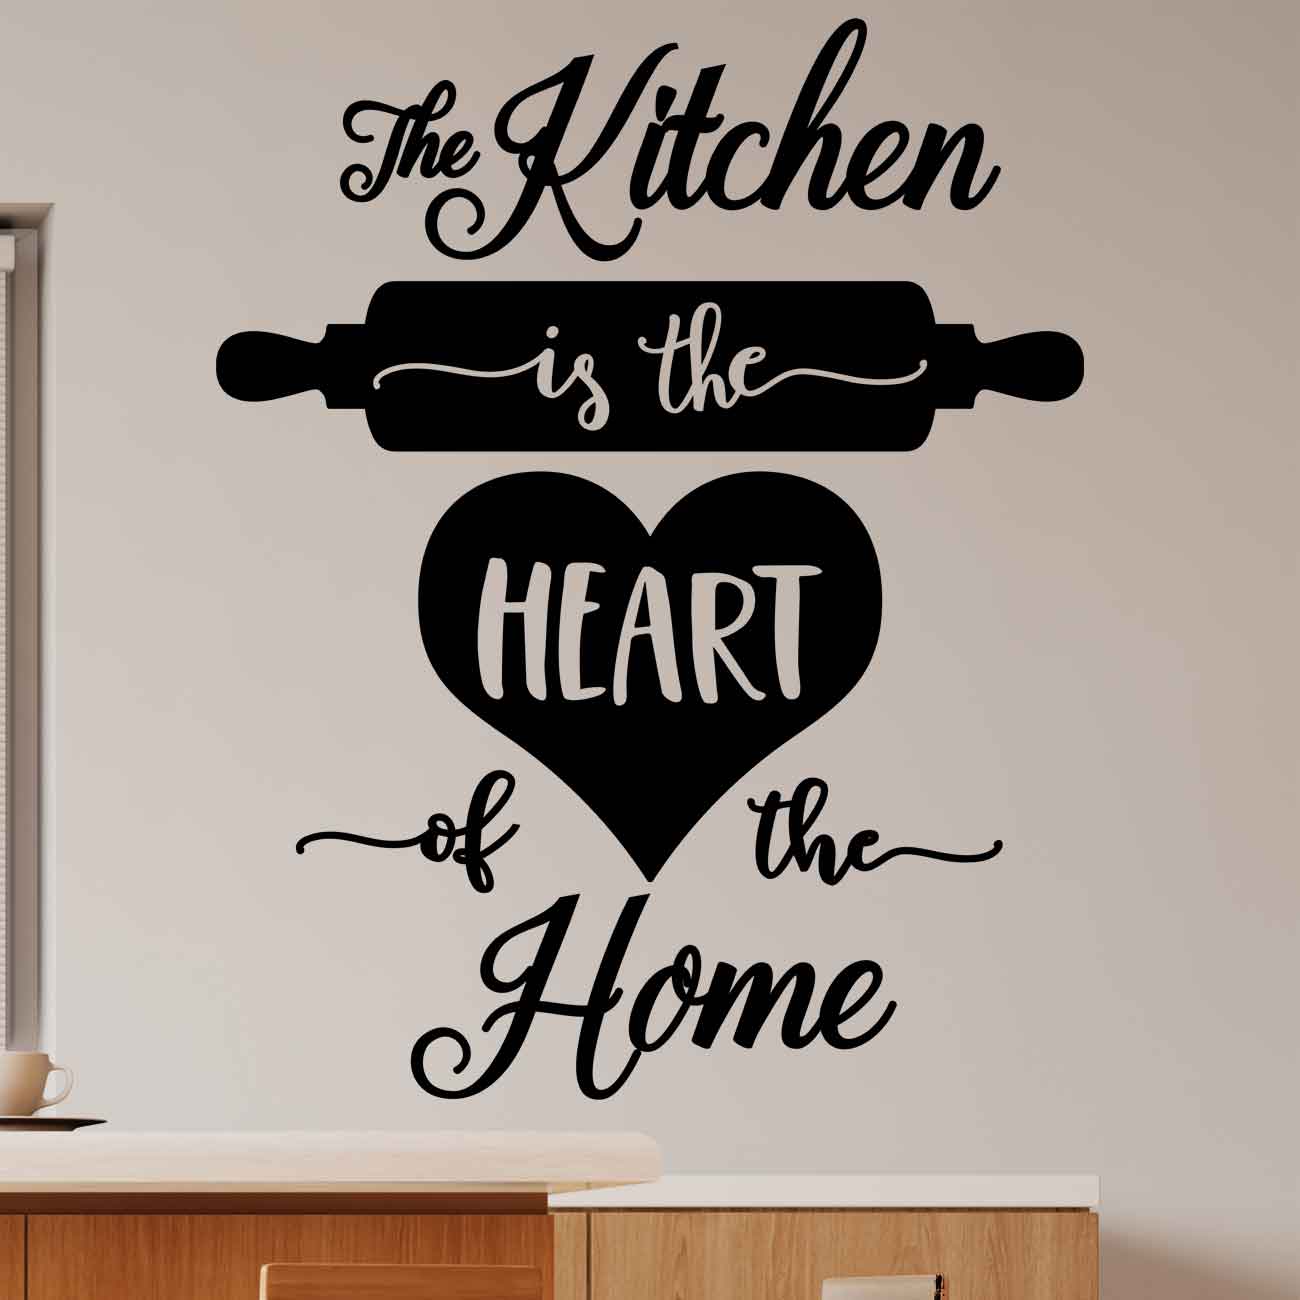 מדבקת קיר למטבח 2 The kitchen is the heart of the home